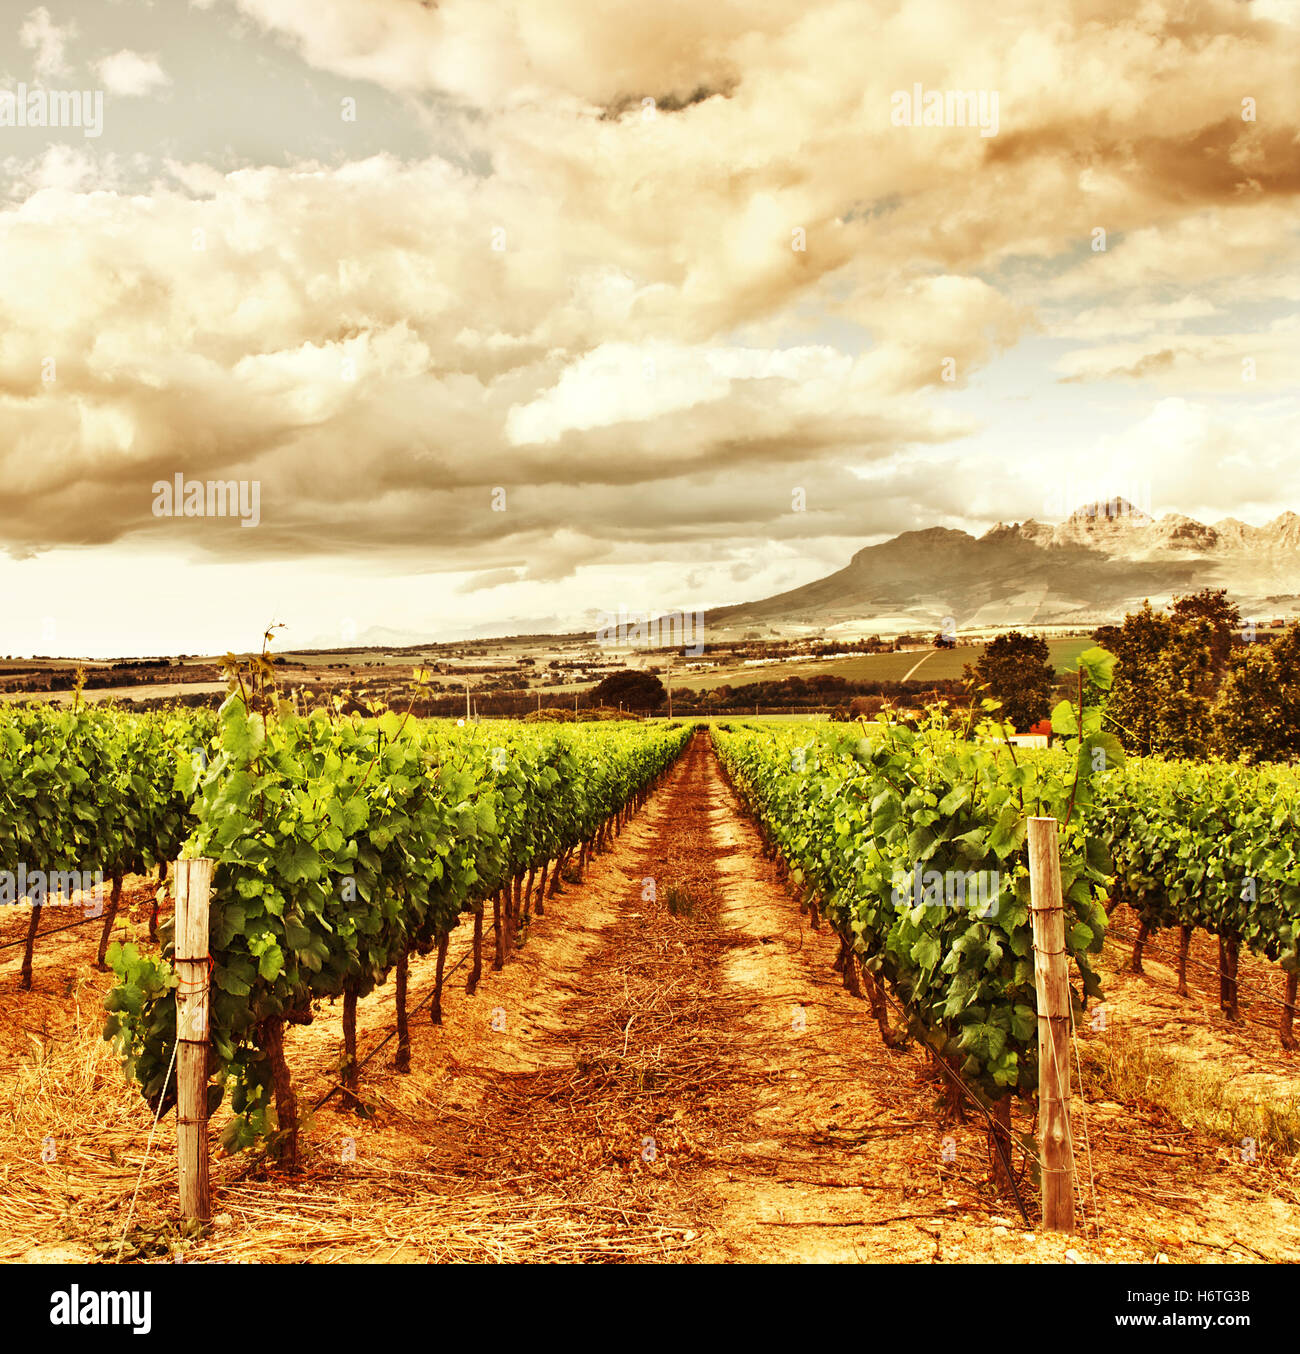 Agricoltura, allevamento, uve, vigneto, valley, vigneto, paesaggio, paesaggio, Foto Stock